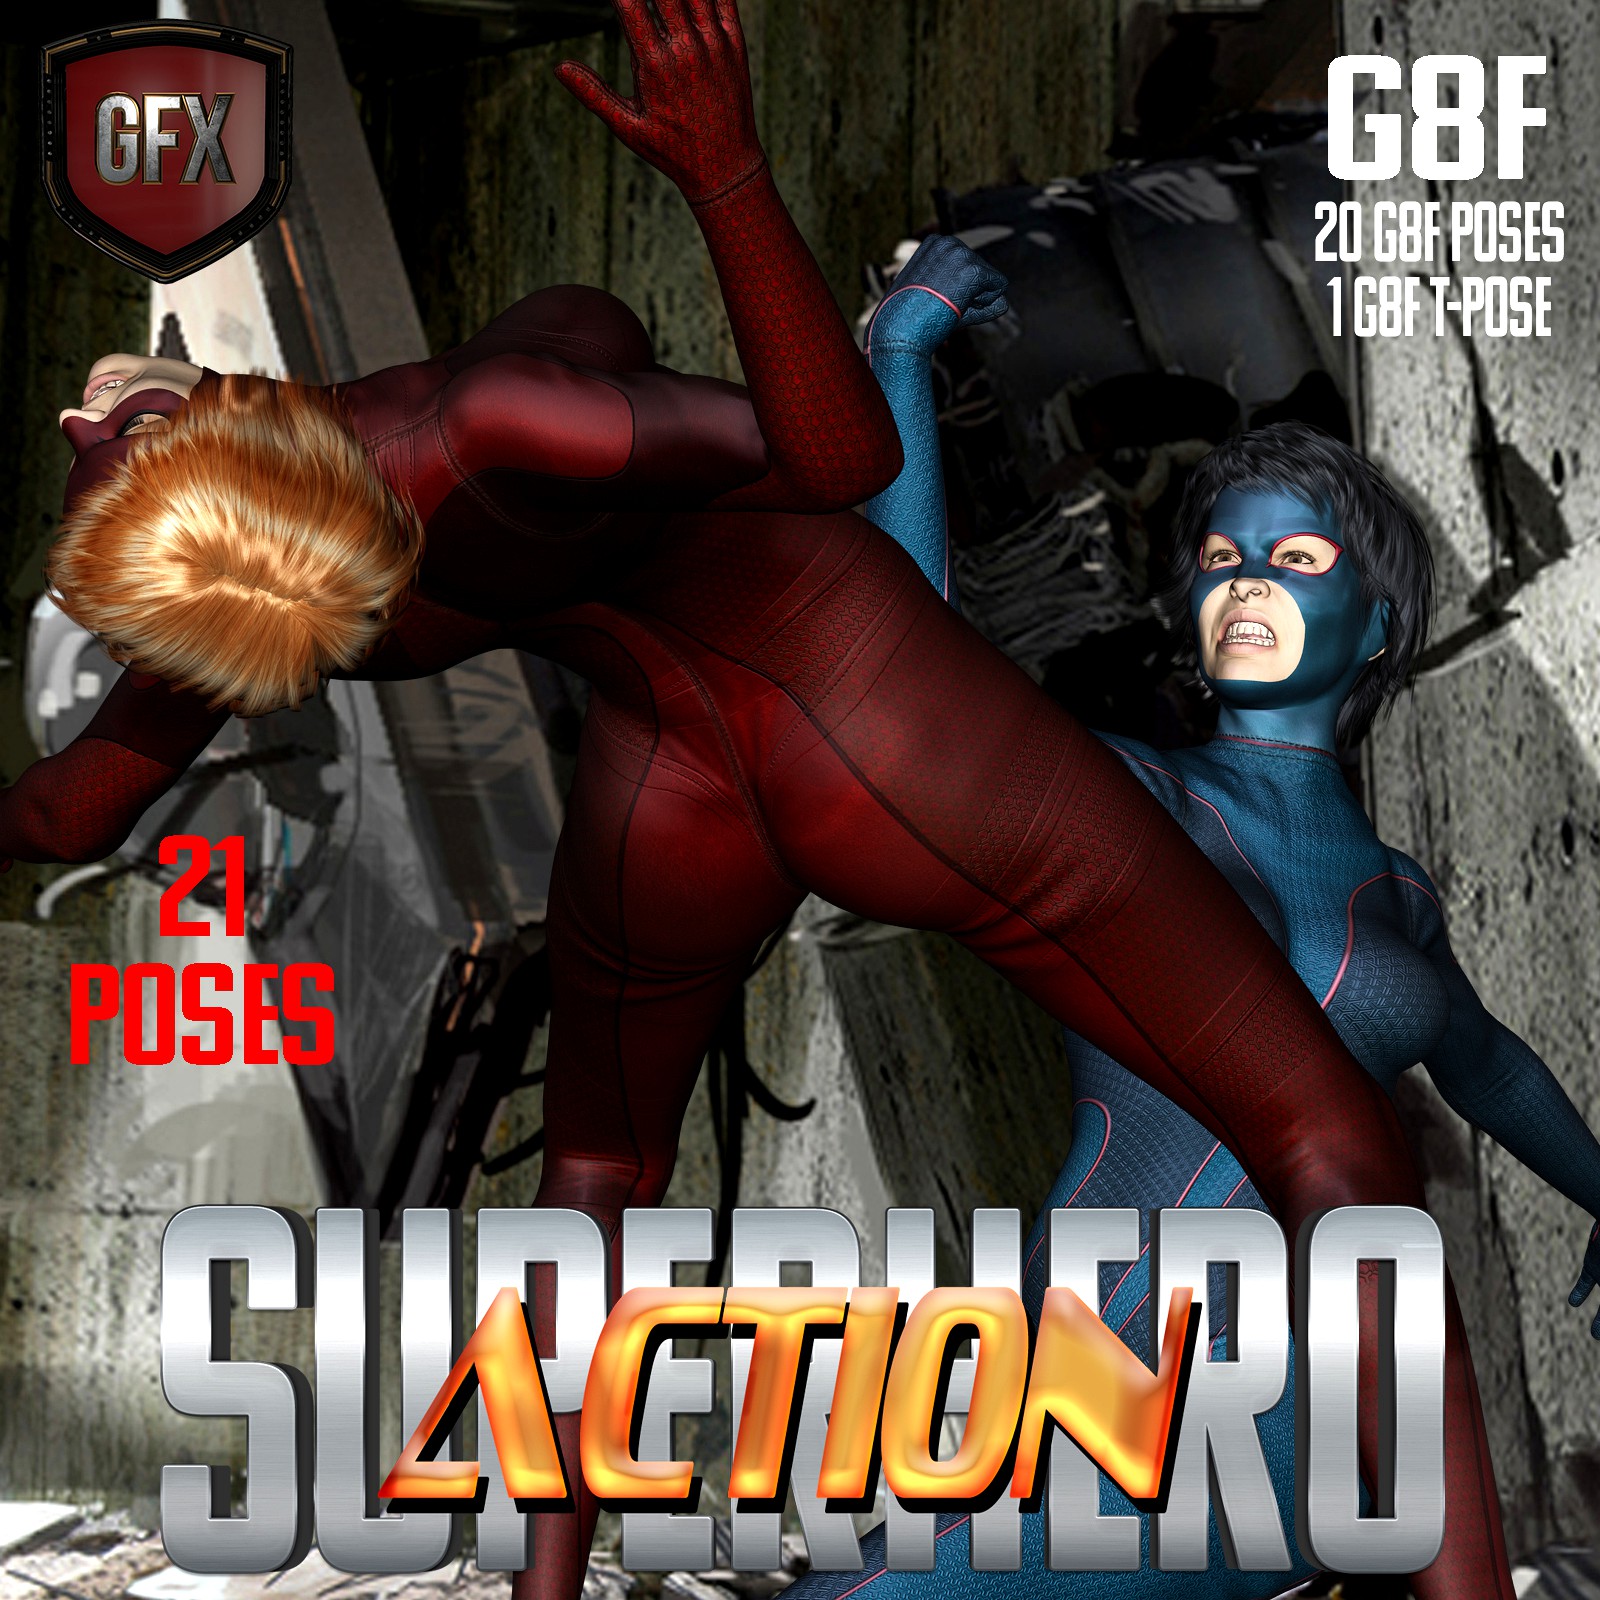 SuperHero Action for G8F Volume 1